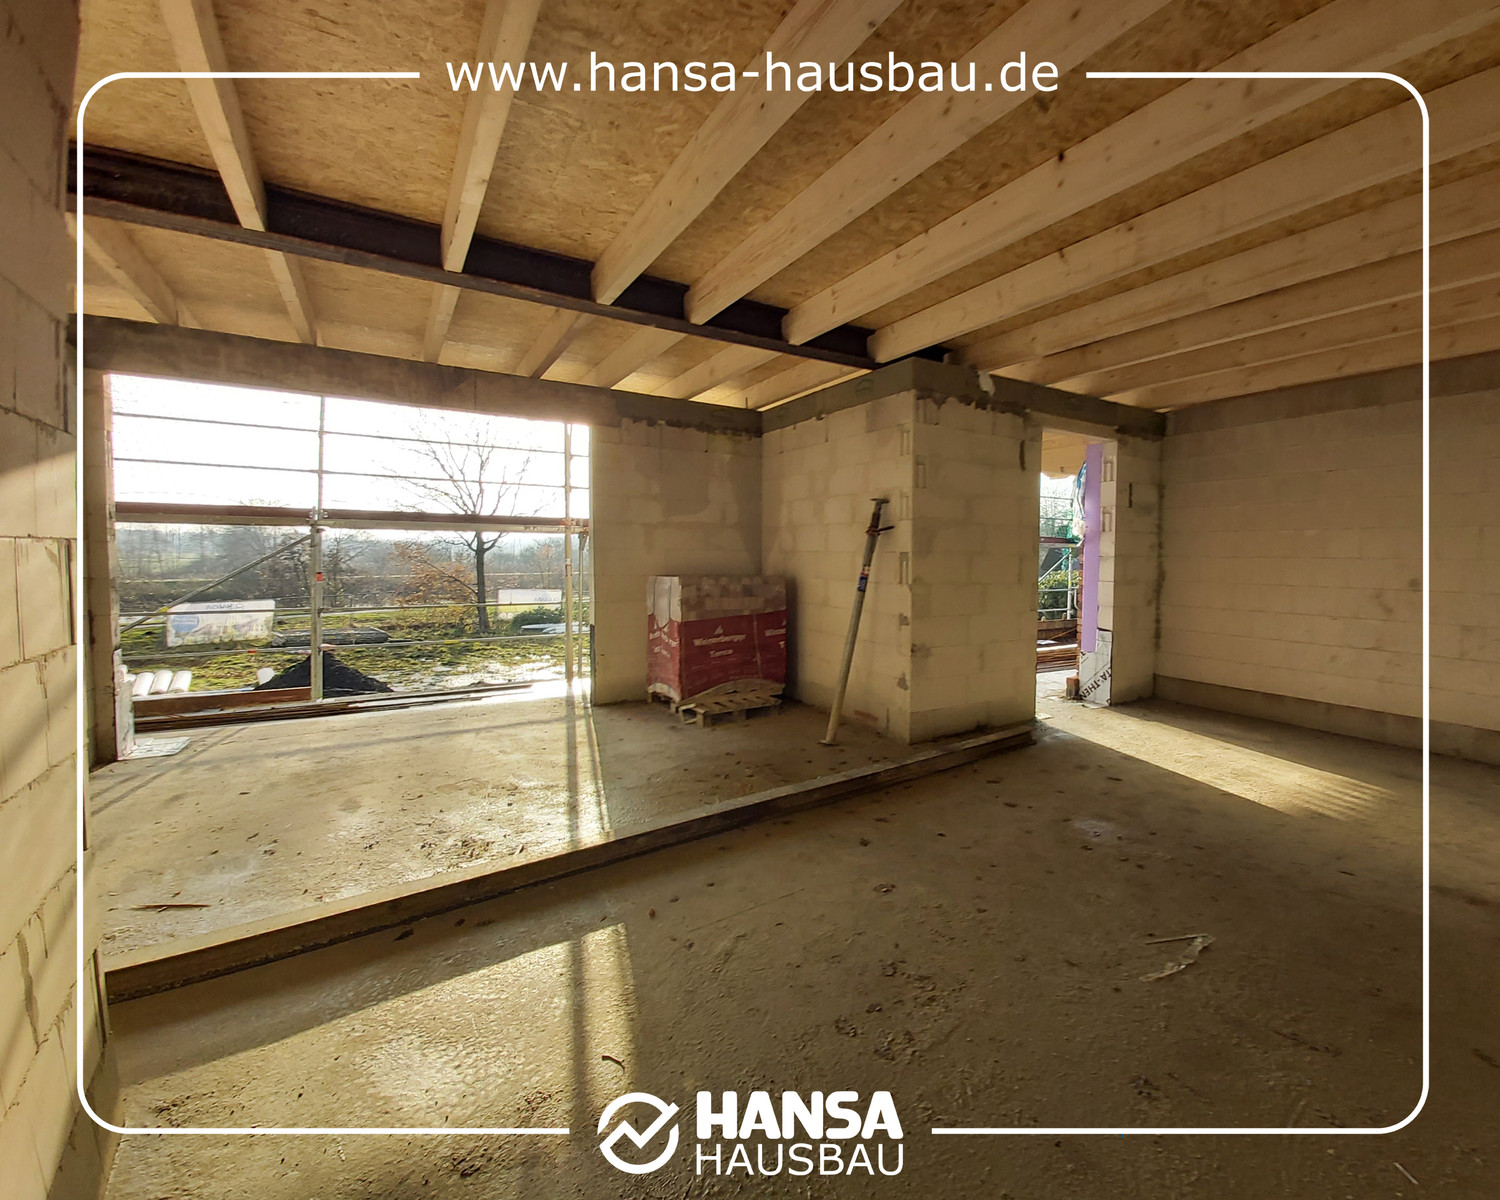 Hansa Hausbau Bauplanung Architektenhaus Neubau